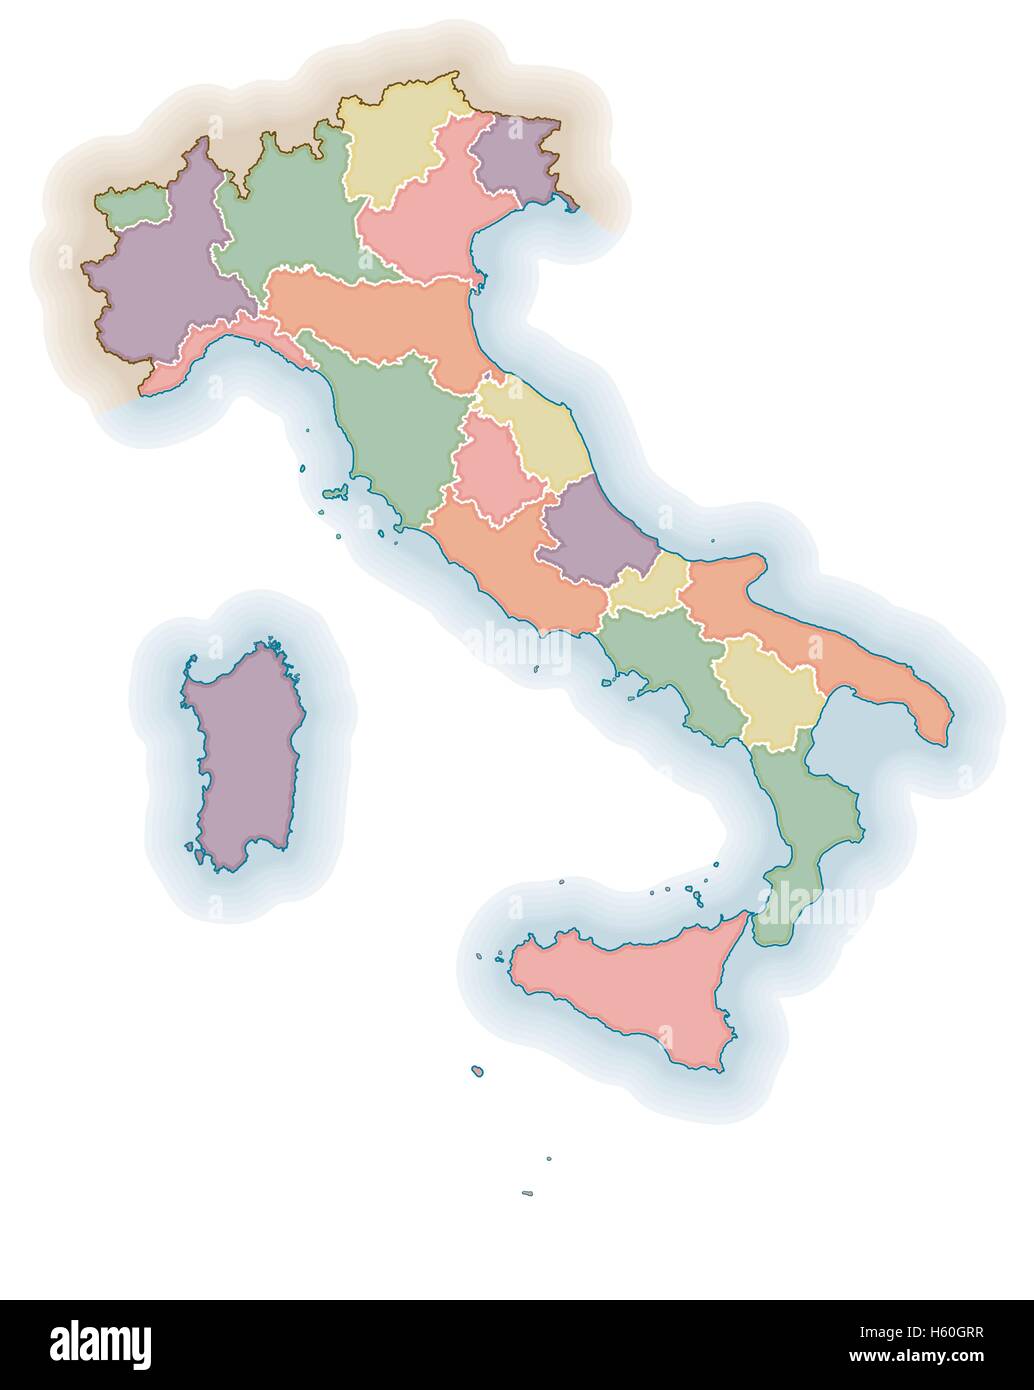 Les frontières des régions italiennes carte vierge. Carte politique de l'Italie. Une couche pour chaque région. Illustration de Vecteur